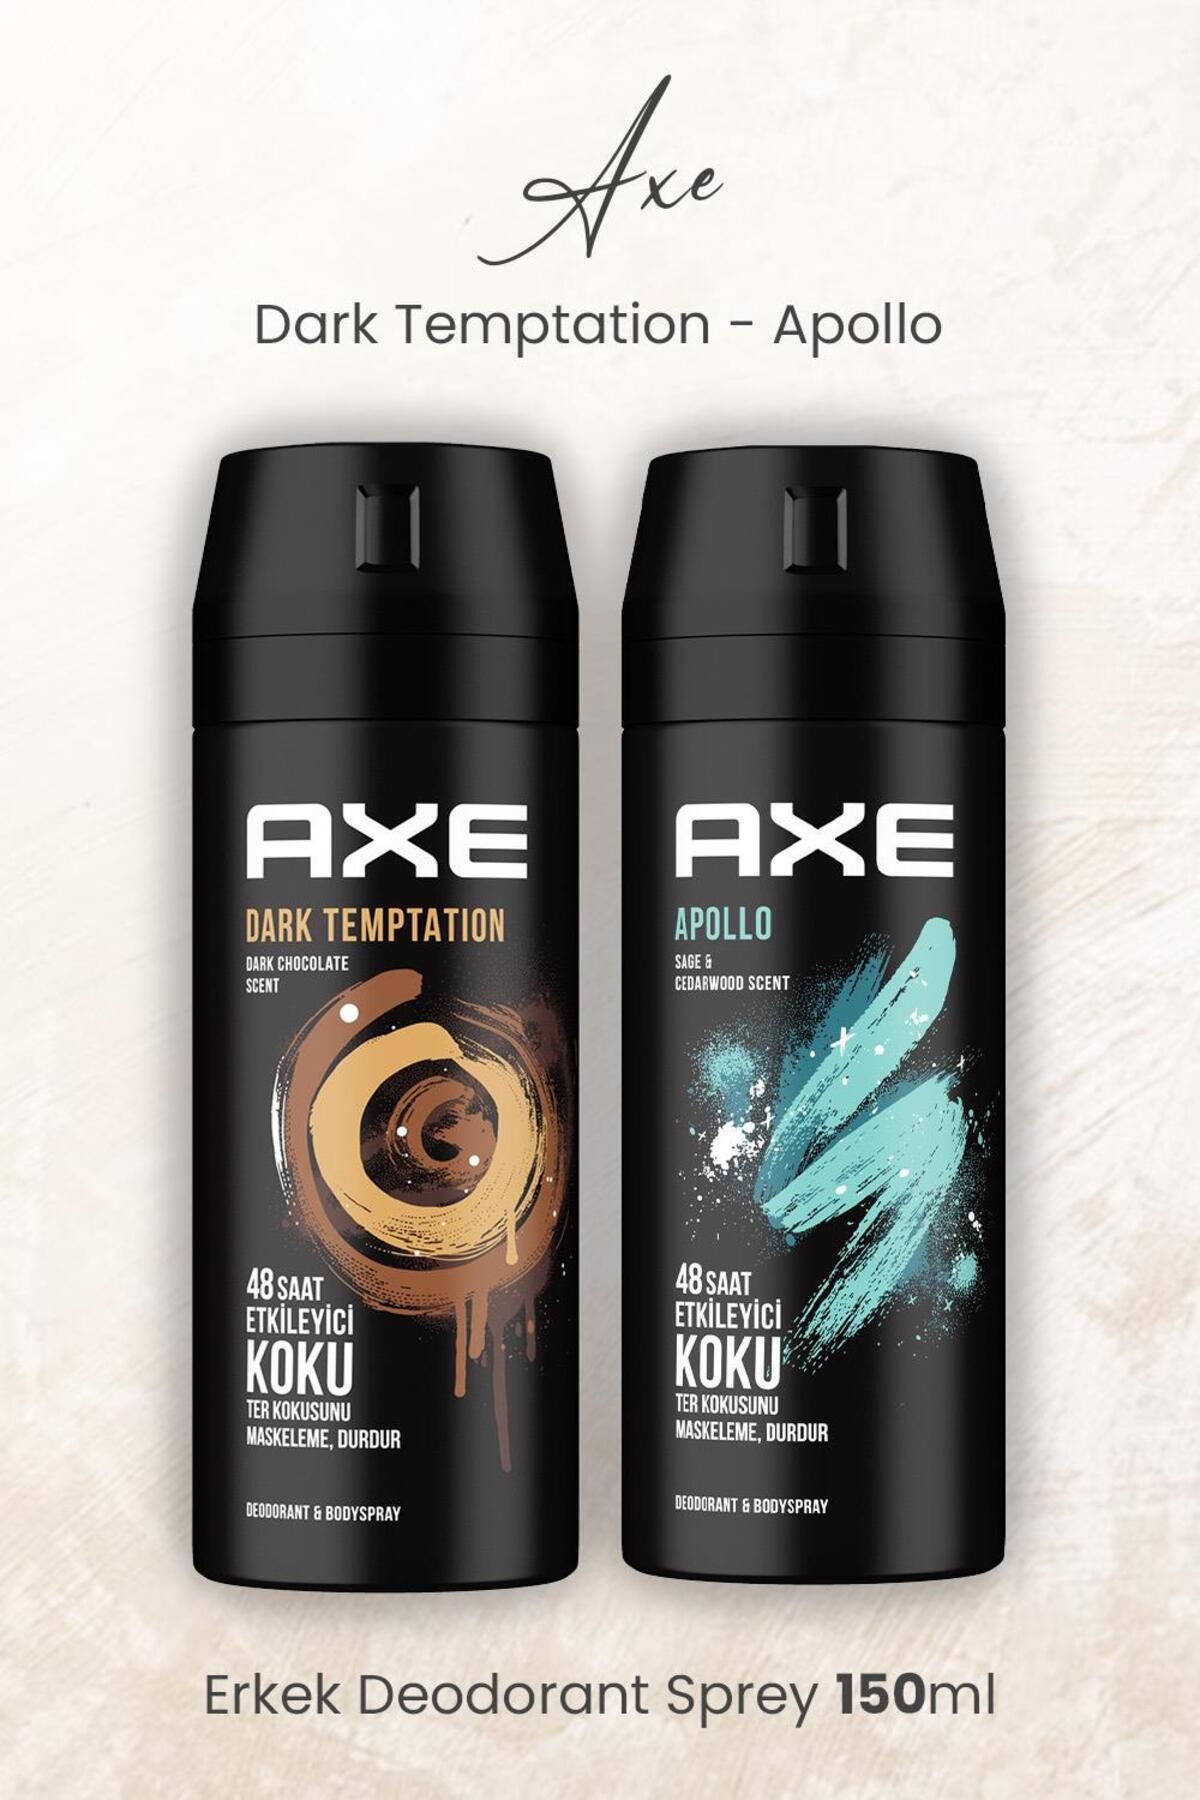 Axe Erkek Deodorant Sprey Dark Temptation ve Apollo 150 ml